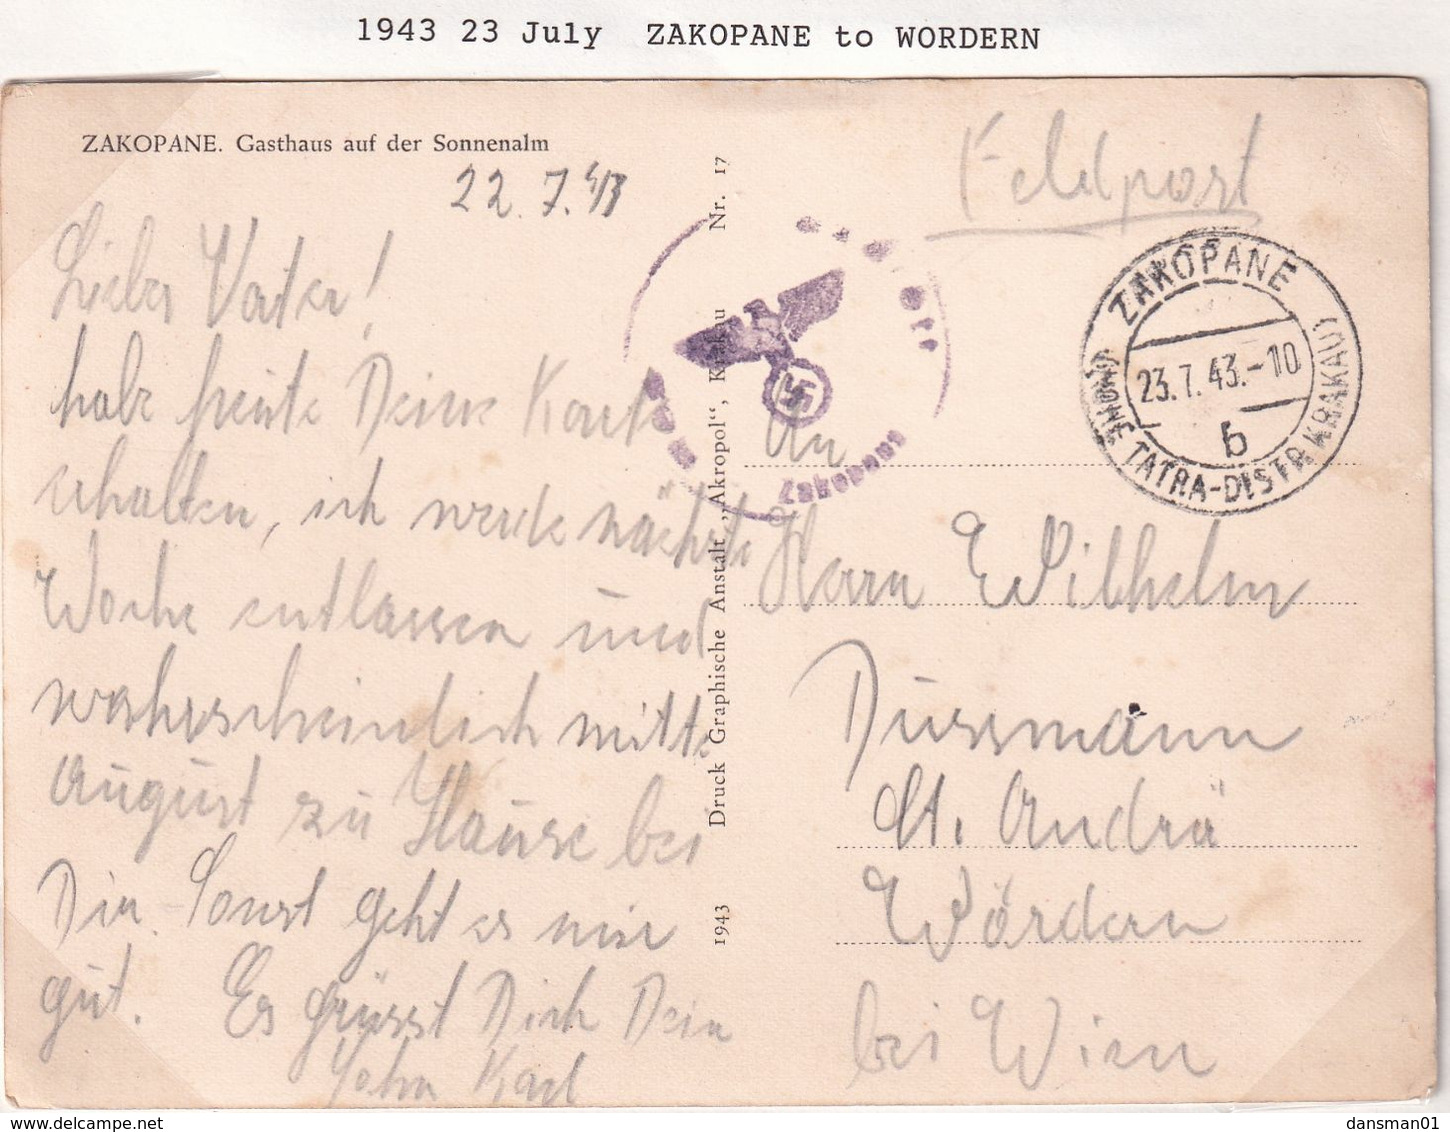 POLAND 1943 Zakopane Fieldpost Postcard - Londoner Regierung (Exil)